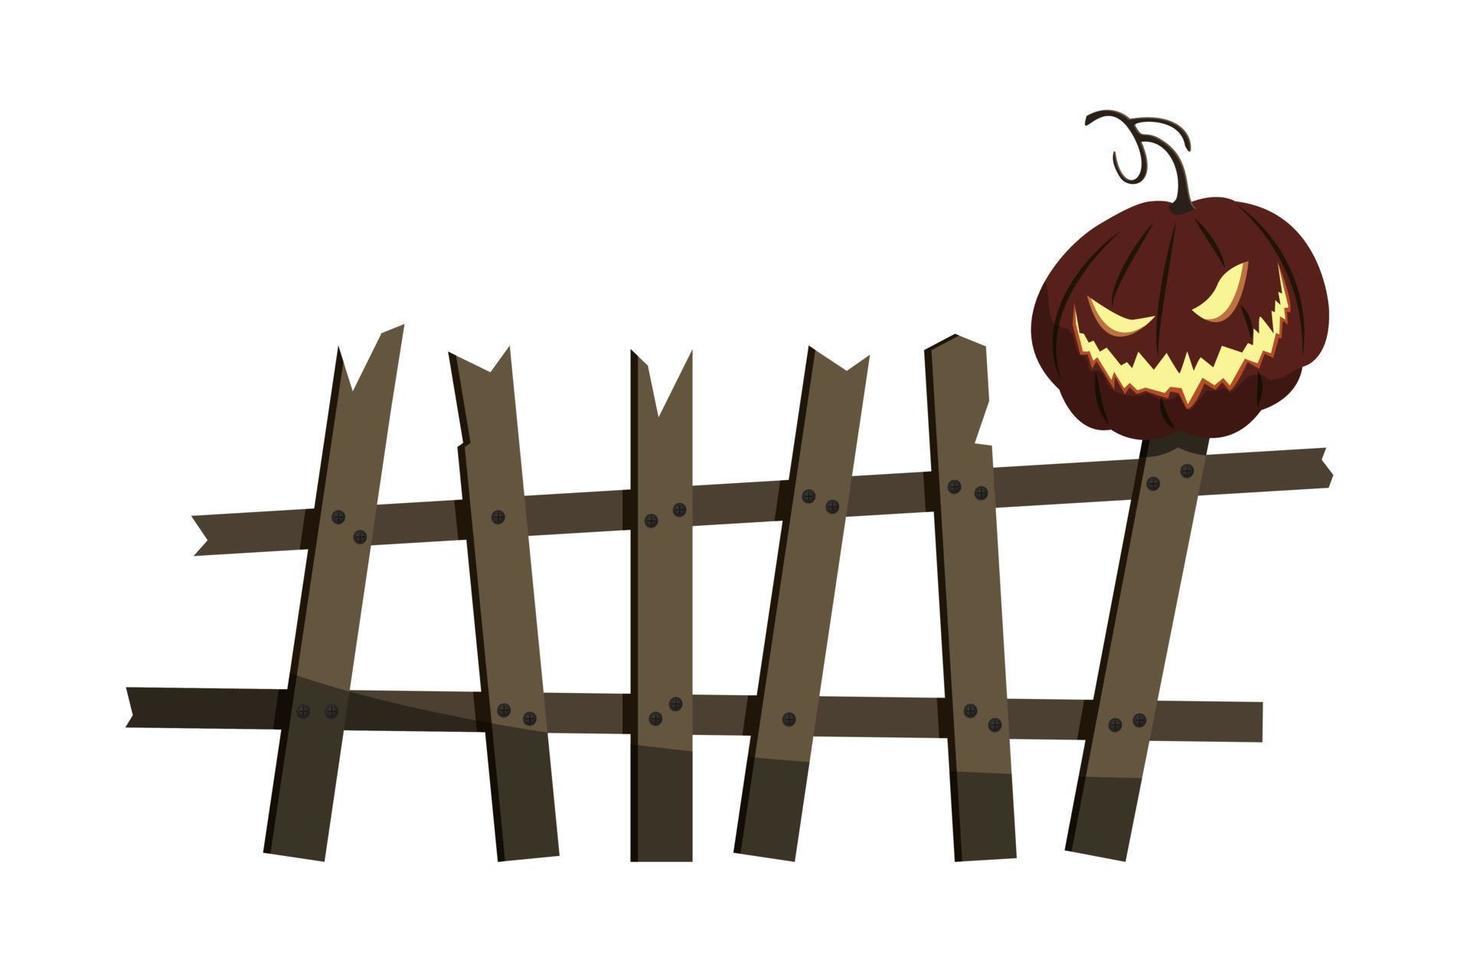 Zaun alt kaputt unheimlich mit gespenstisch lächelndem Halloween-Kürbis, Designelement, isoliert, weißer Hintergrund. vektor